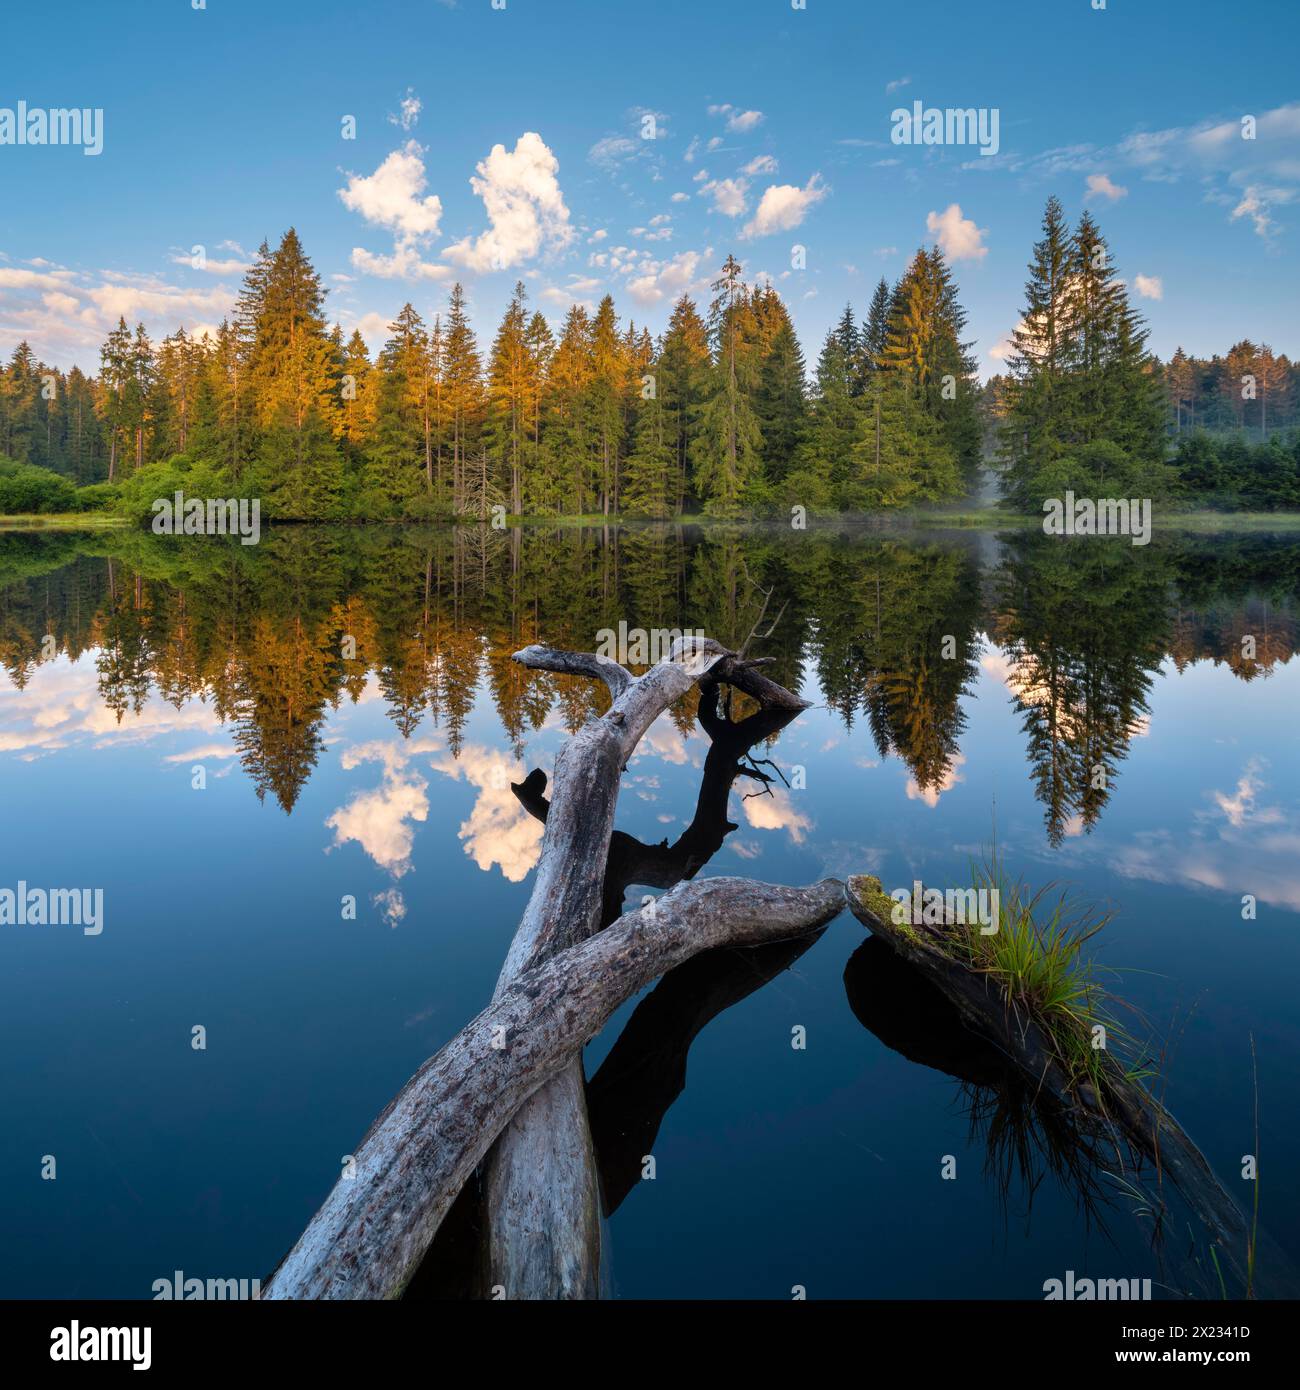 Petit lac dans la forêt de Thuringe à la lumière du matin, arbre abattu par un castor se trouve dans l'eau, forêt d'épicéa est reflété, Thuringe, Allemagne Banque D'Images